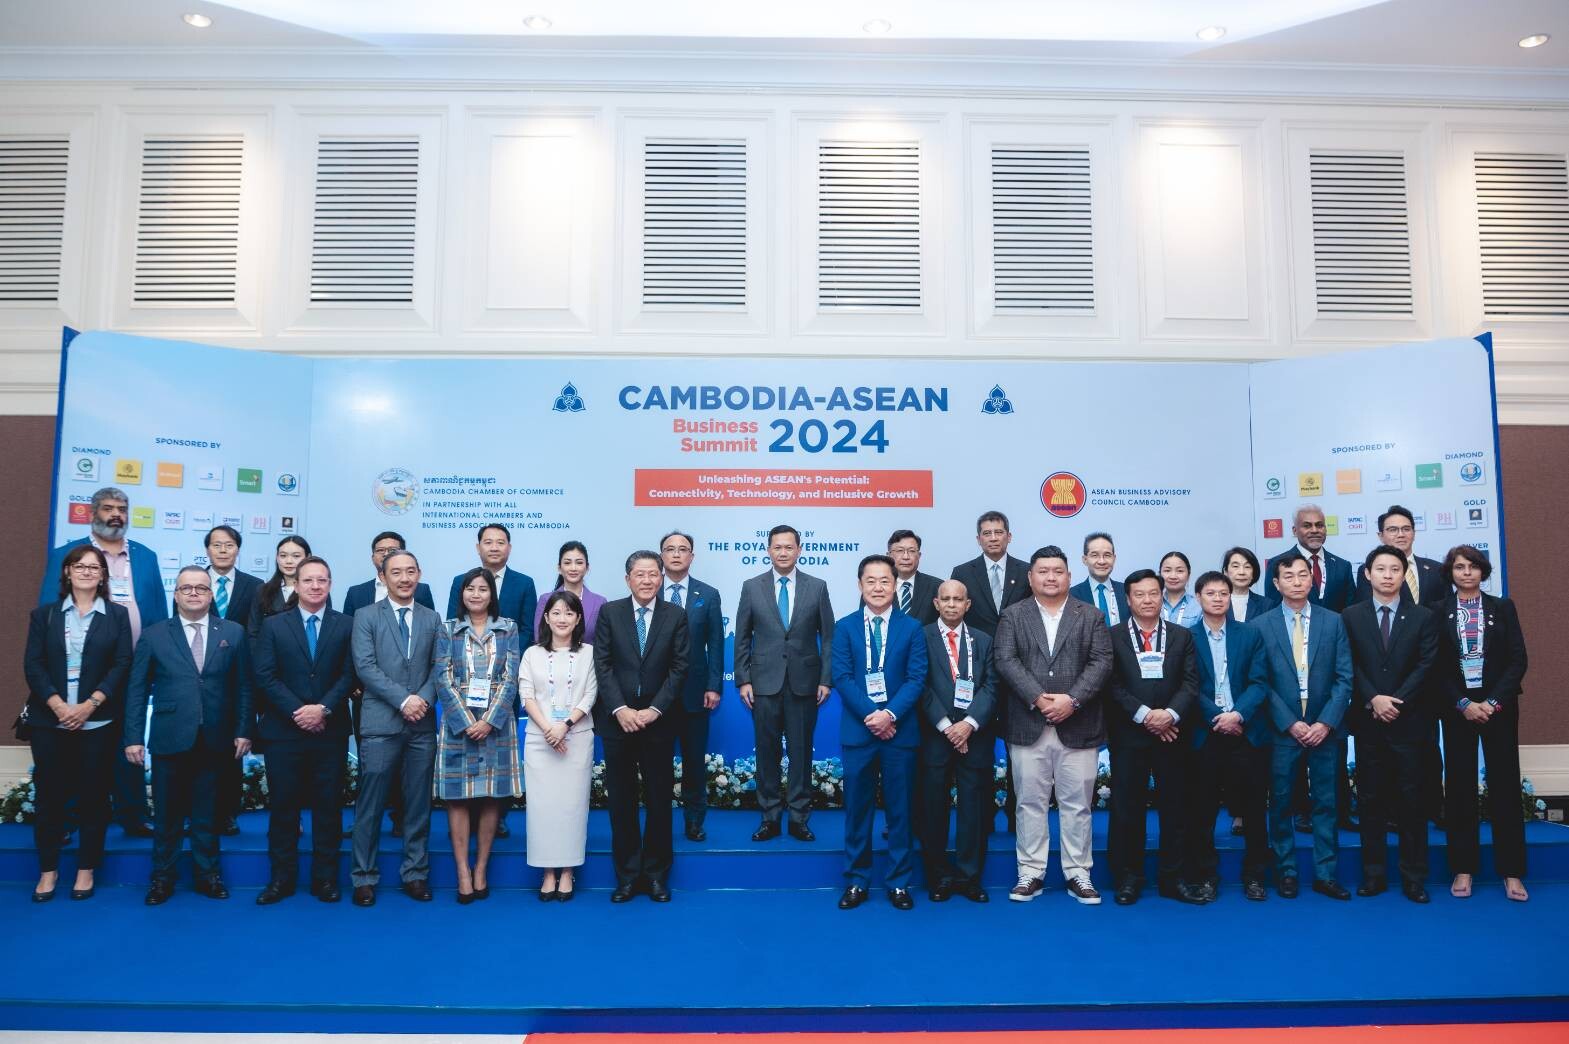 โรงพยาบาลกรุงเทพฯ โชว์ศักยภาพธุรกิจการแพทย์ของไทย บนเวทีอาเซียน ในงาน "The CAMBODIA-ASEAN BUSINESS SUMMIT 2024" ประเทศกัมพูชา